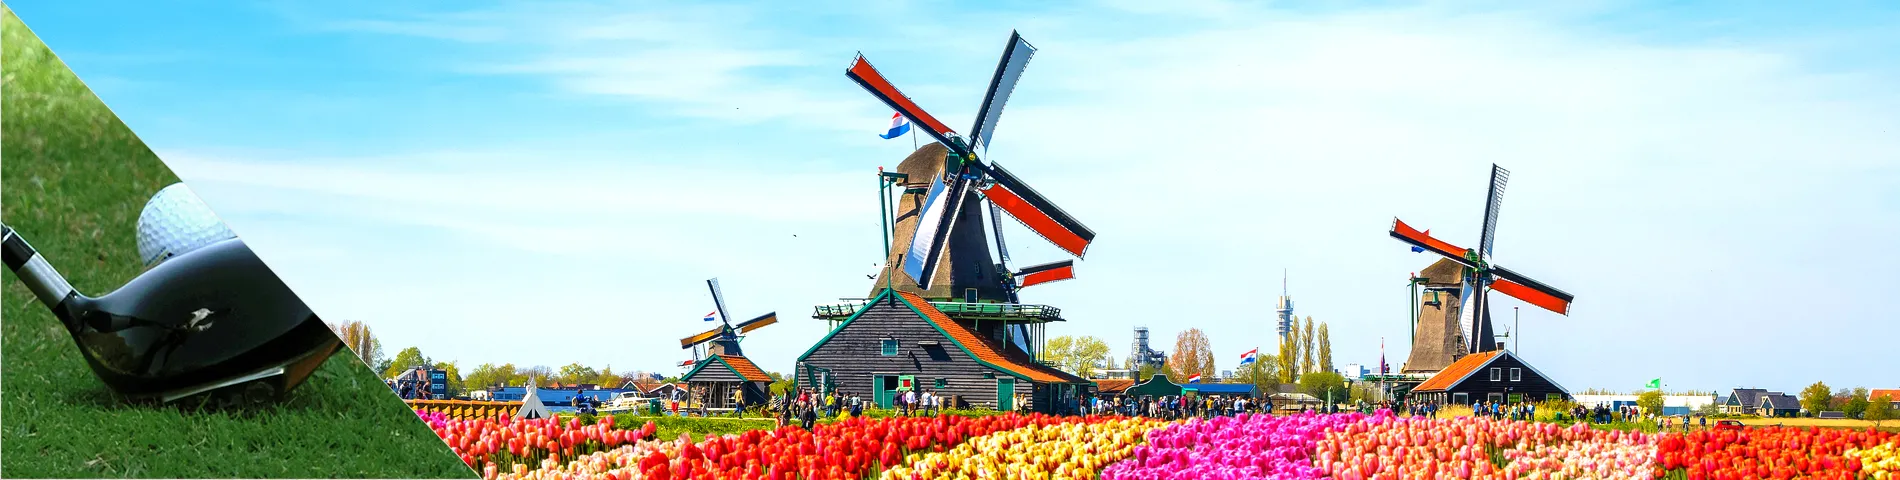 Alankomaat - Hollanti & golf